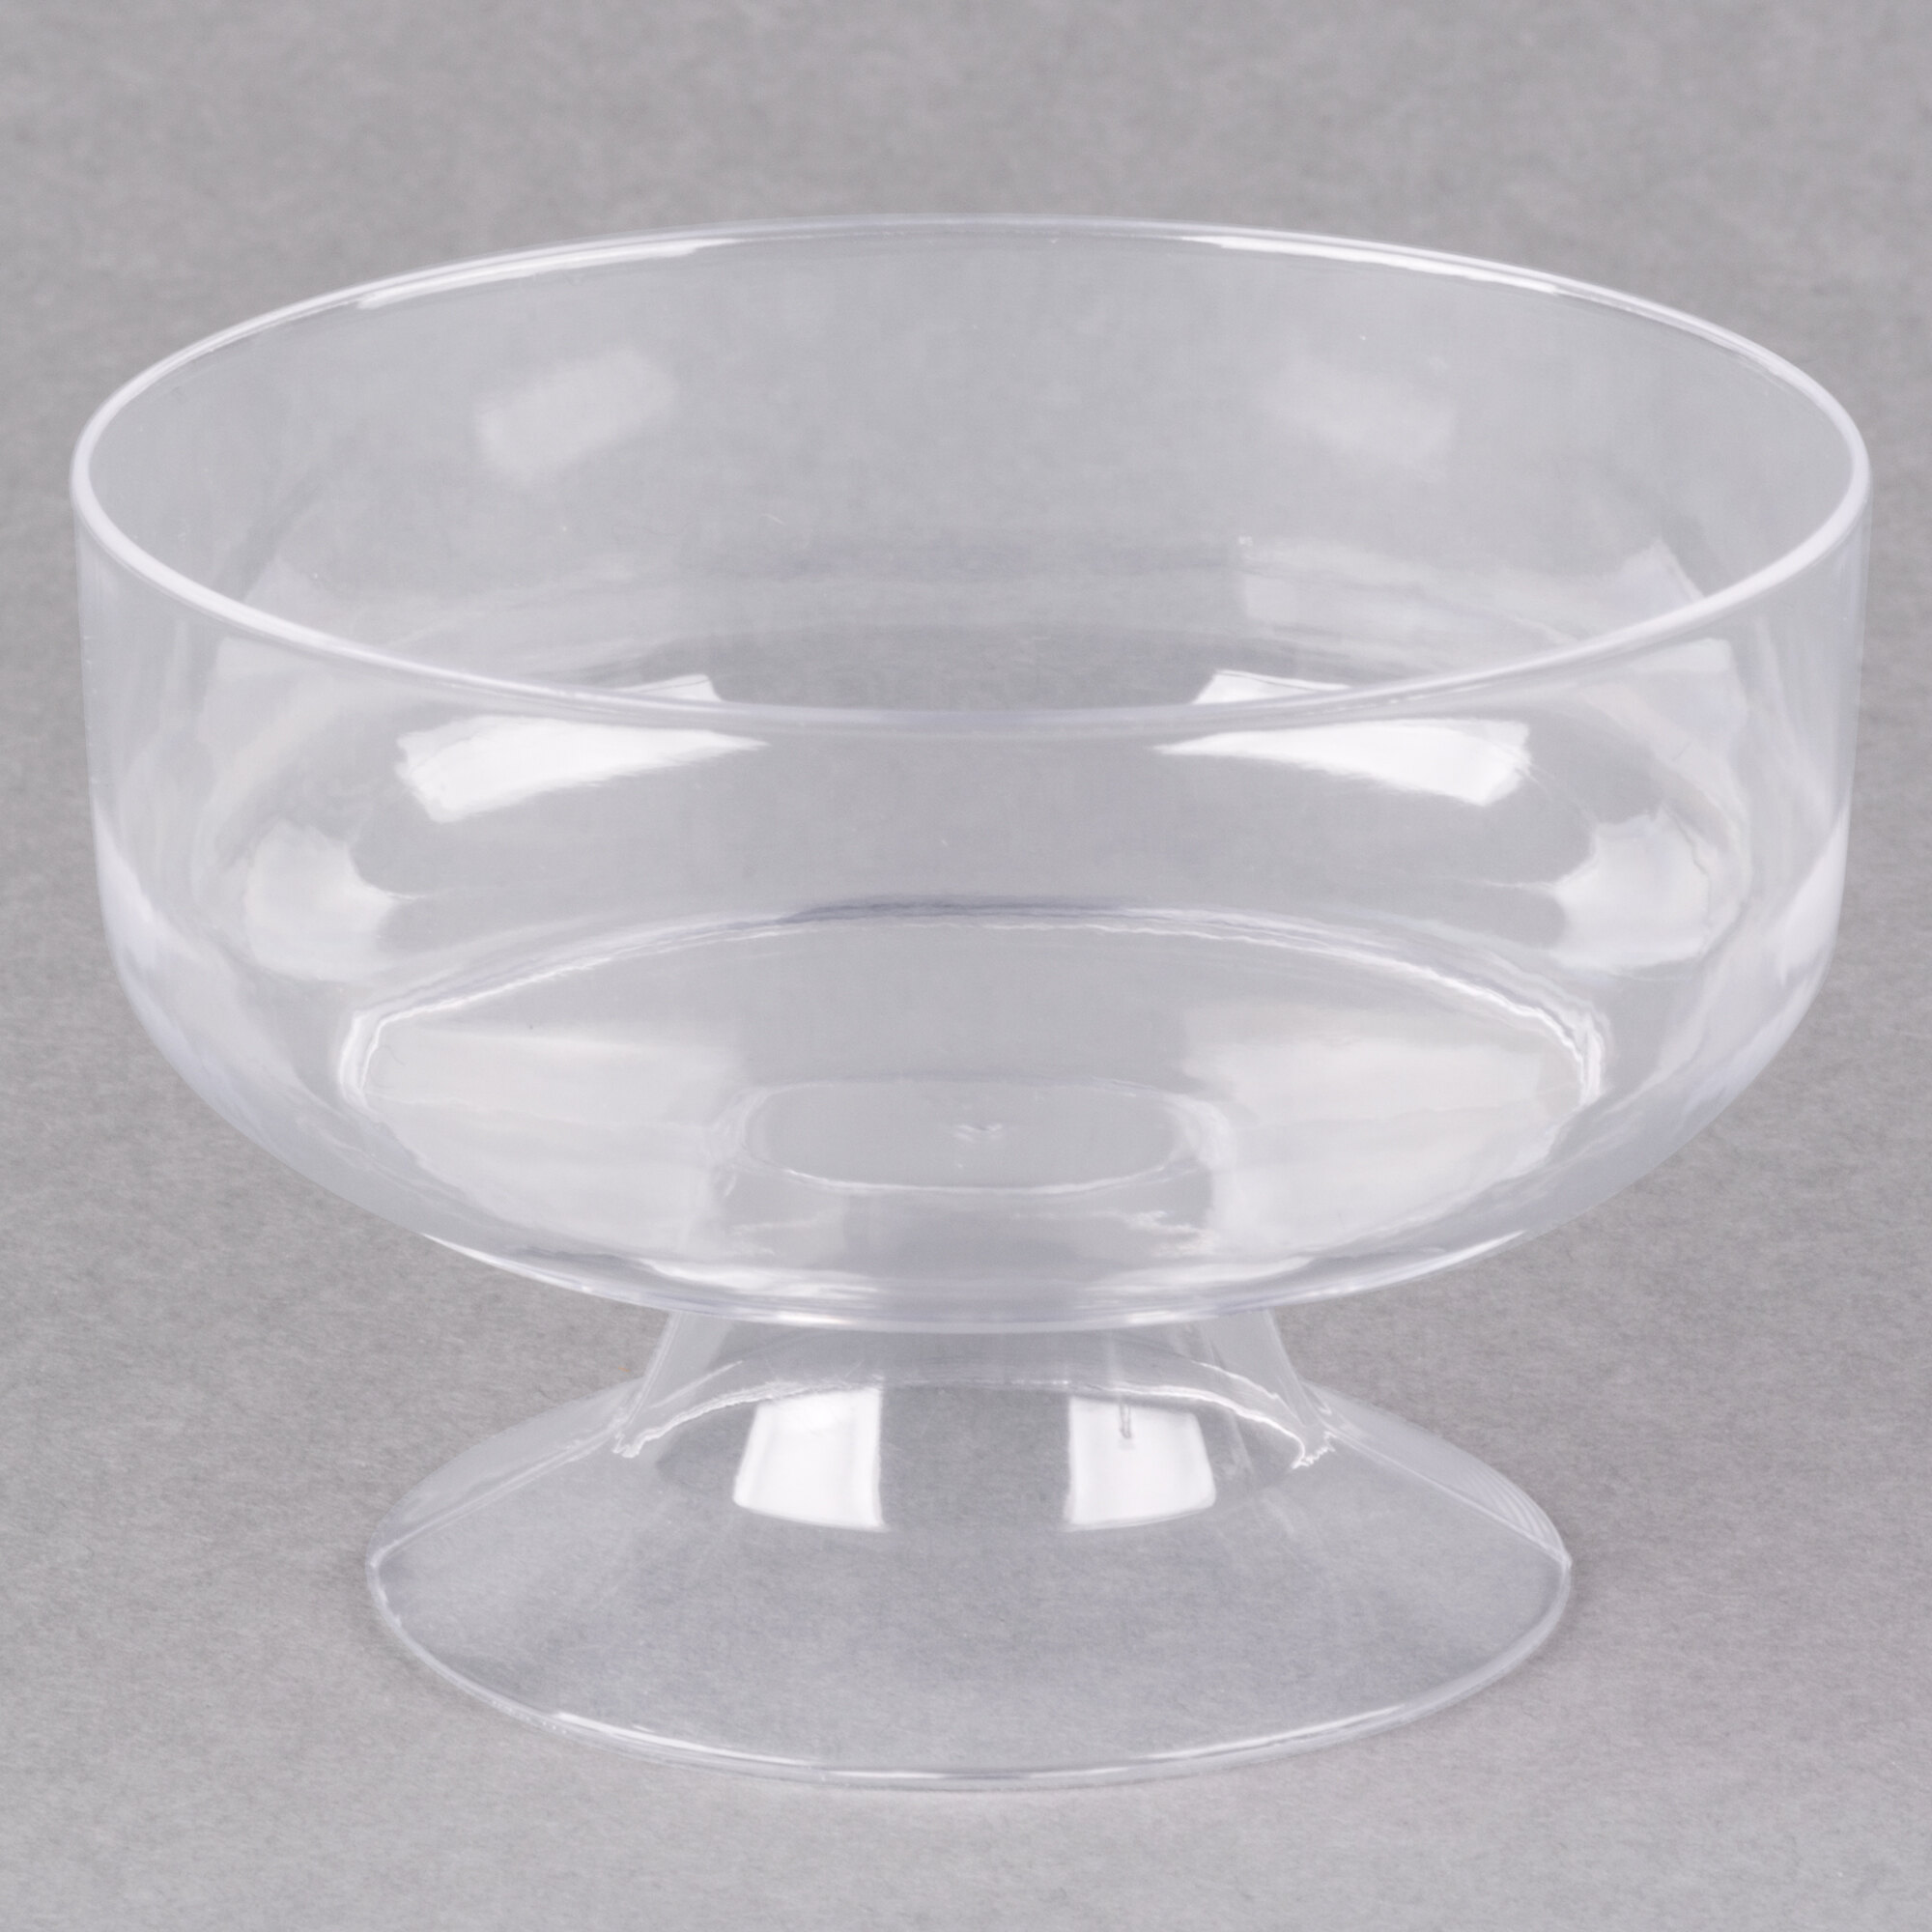 Visions 6 Oz Clear Plastic 1 Piece Dessert Cup 240case 4743